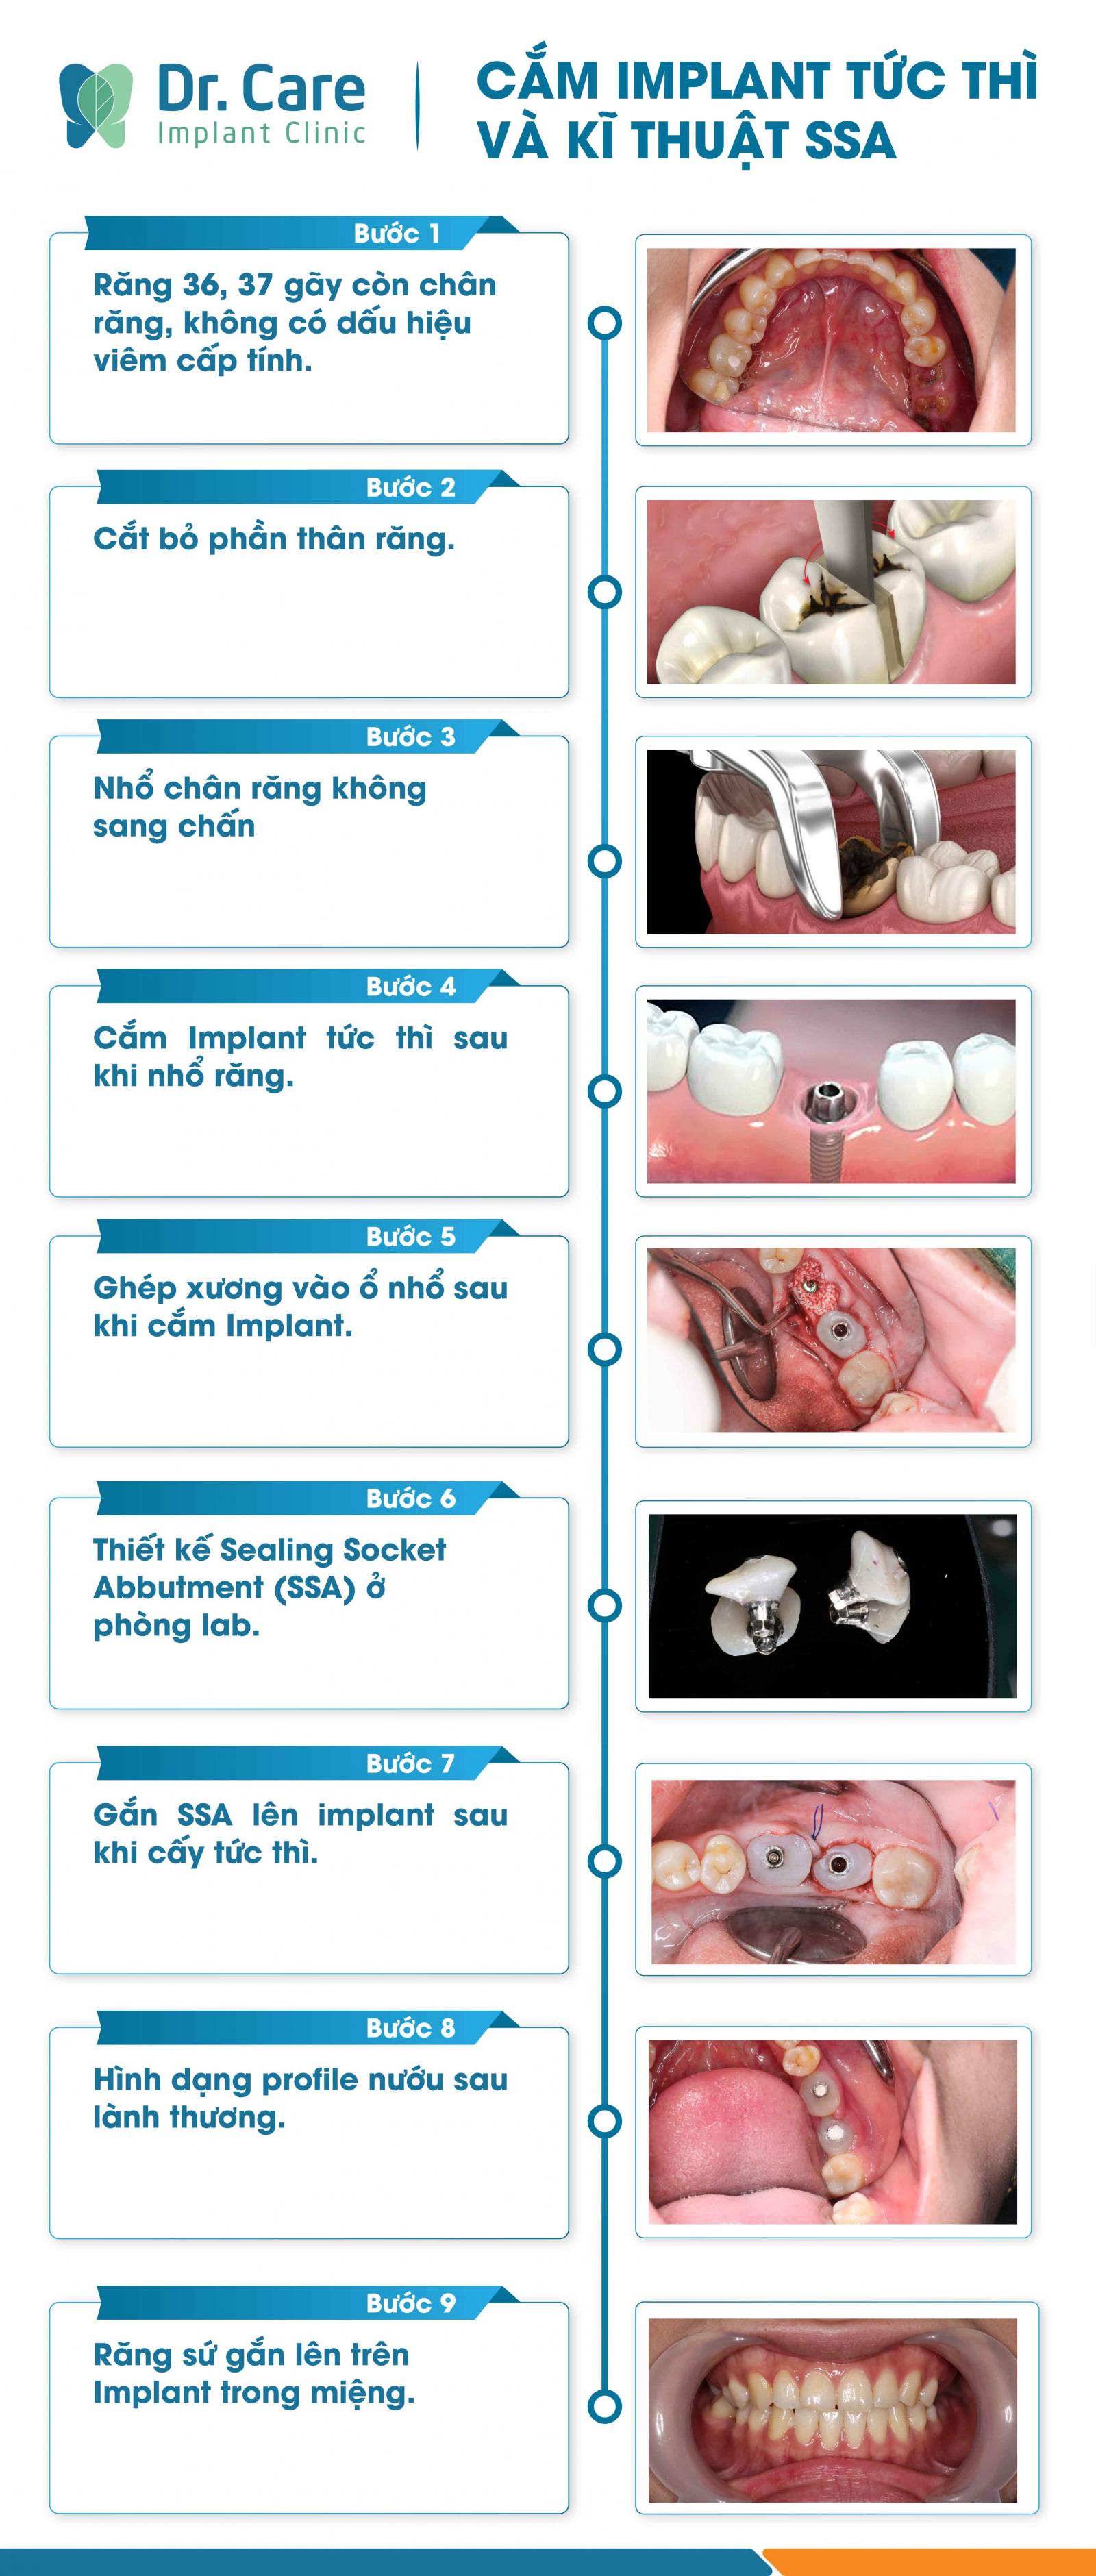 Các bước cơ bản thực hiện cấy ghép Implant và ứng dụng kỹ thuật nắp lành thương ổ răng sau khi cấy ghép.